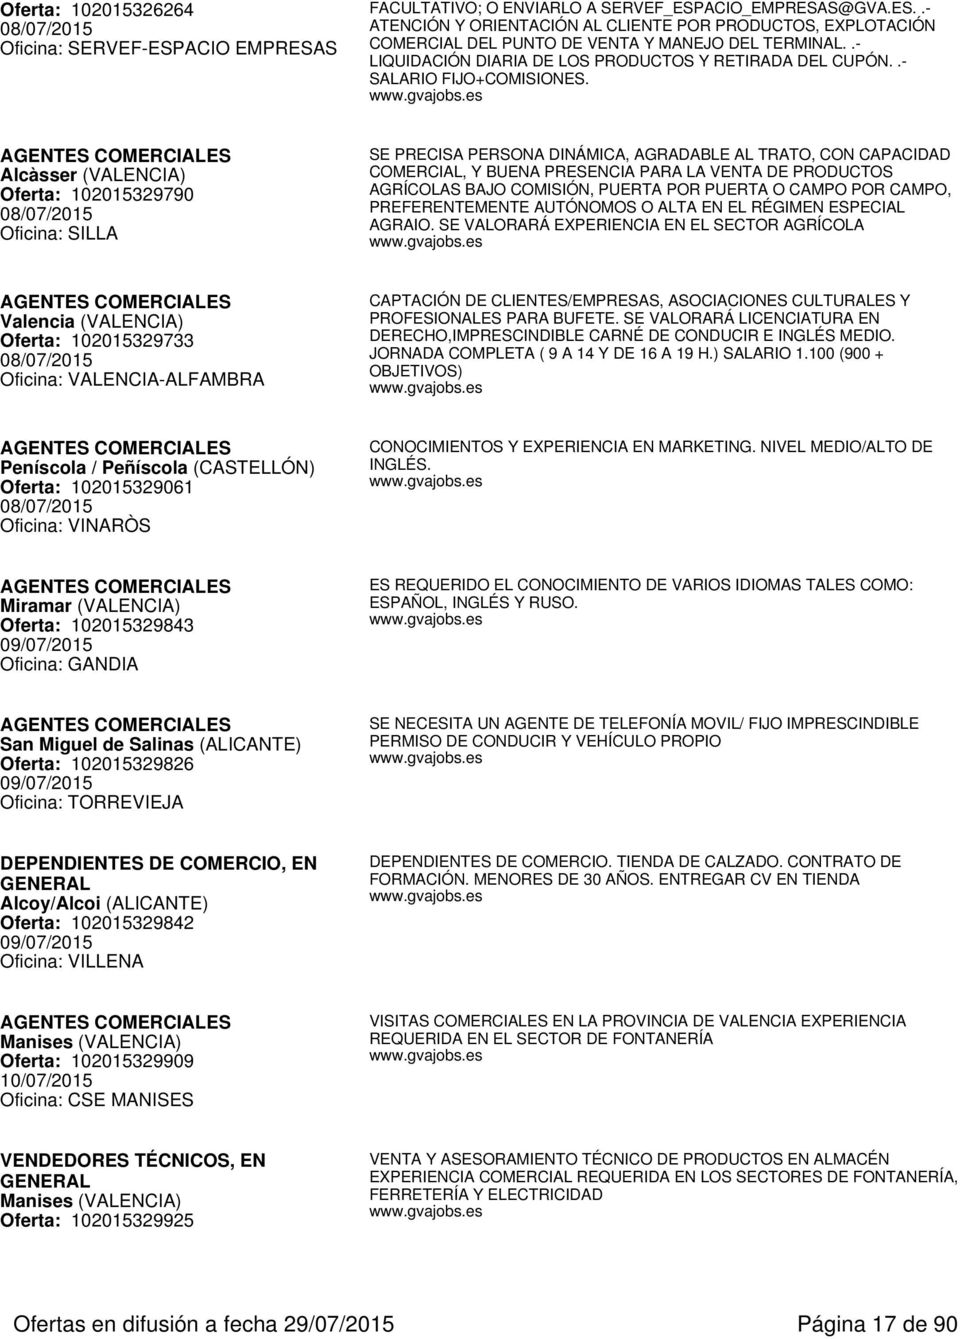 AGENTES COMERCIALES Alcàsser (VALENCIA) Oferta: 102015329790 08/07/2015 Oficina: SILLA SE PRECISA PERSONA DINÁMICA, AGRADABLE AL TRATO, CON CAPACIDAD COMERCIAL, Y BUENA PRESENCIA PARA LA VENTA DE